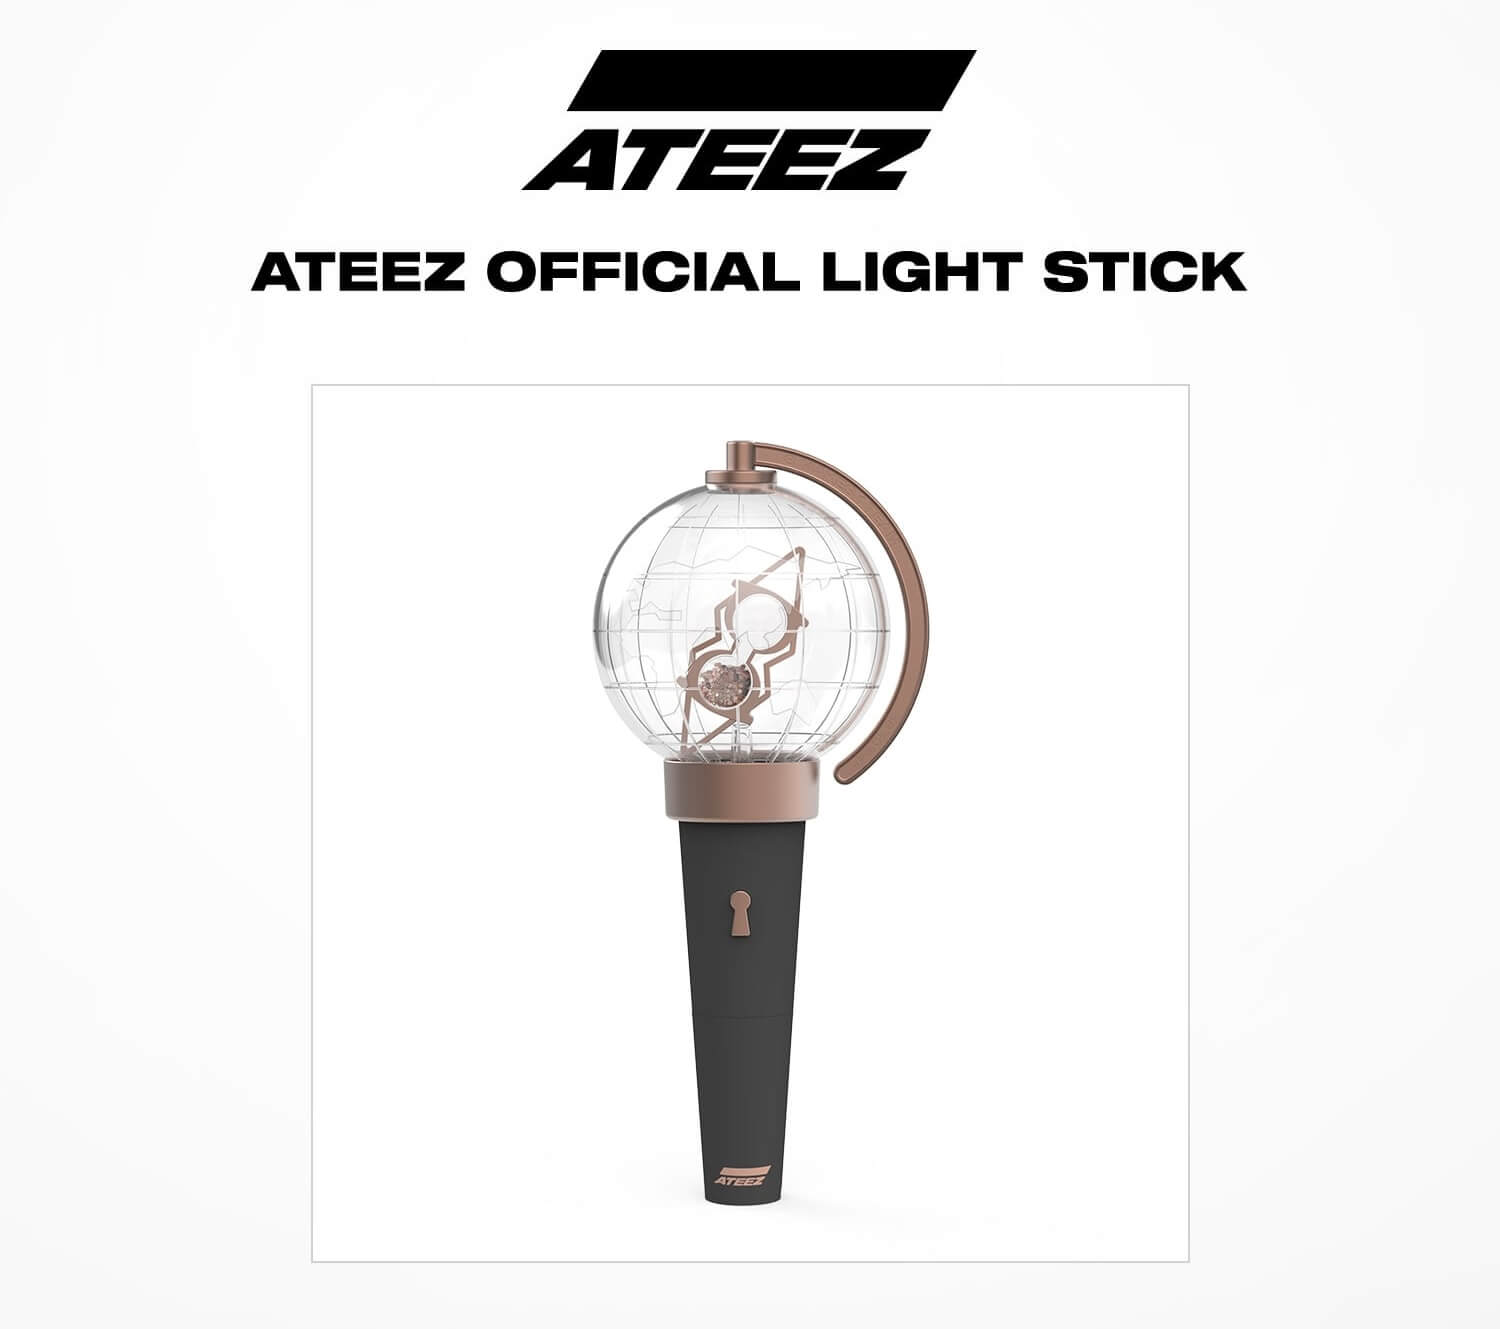 ATEEZ - Grupo revela o seu Lightstick Oficial